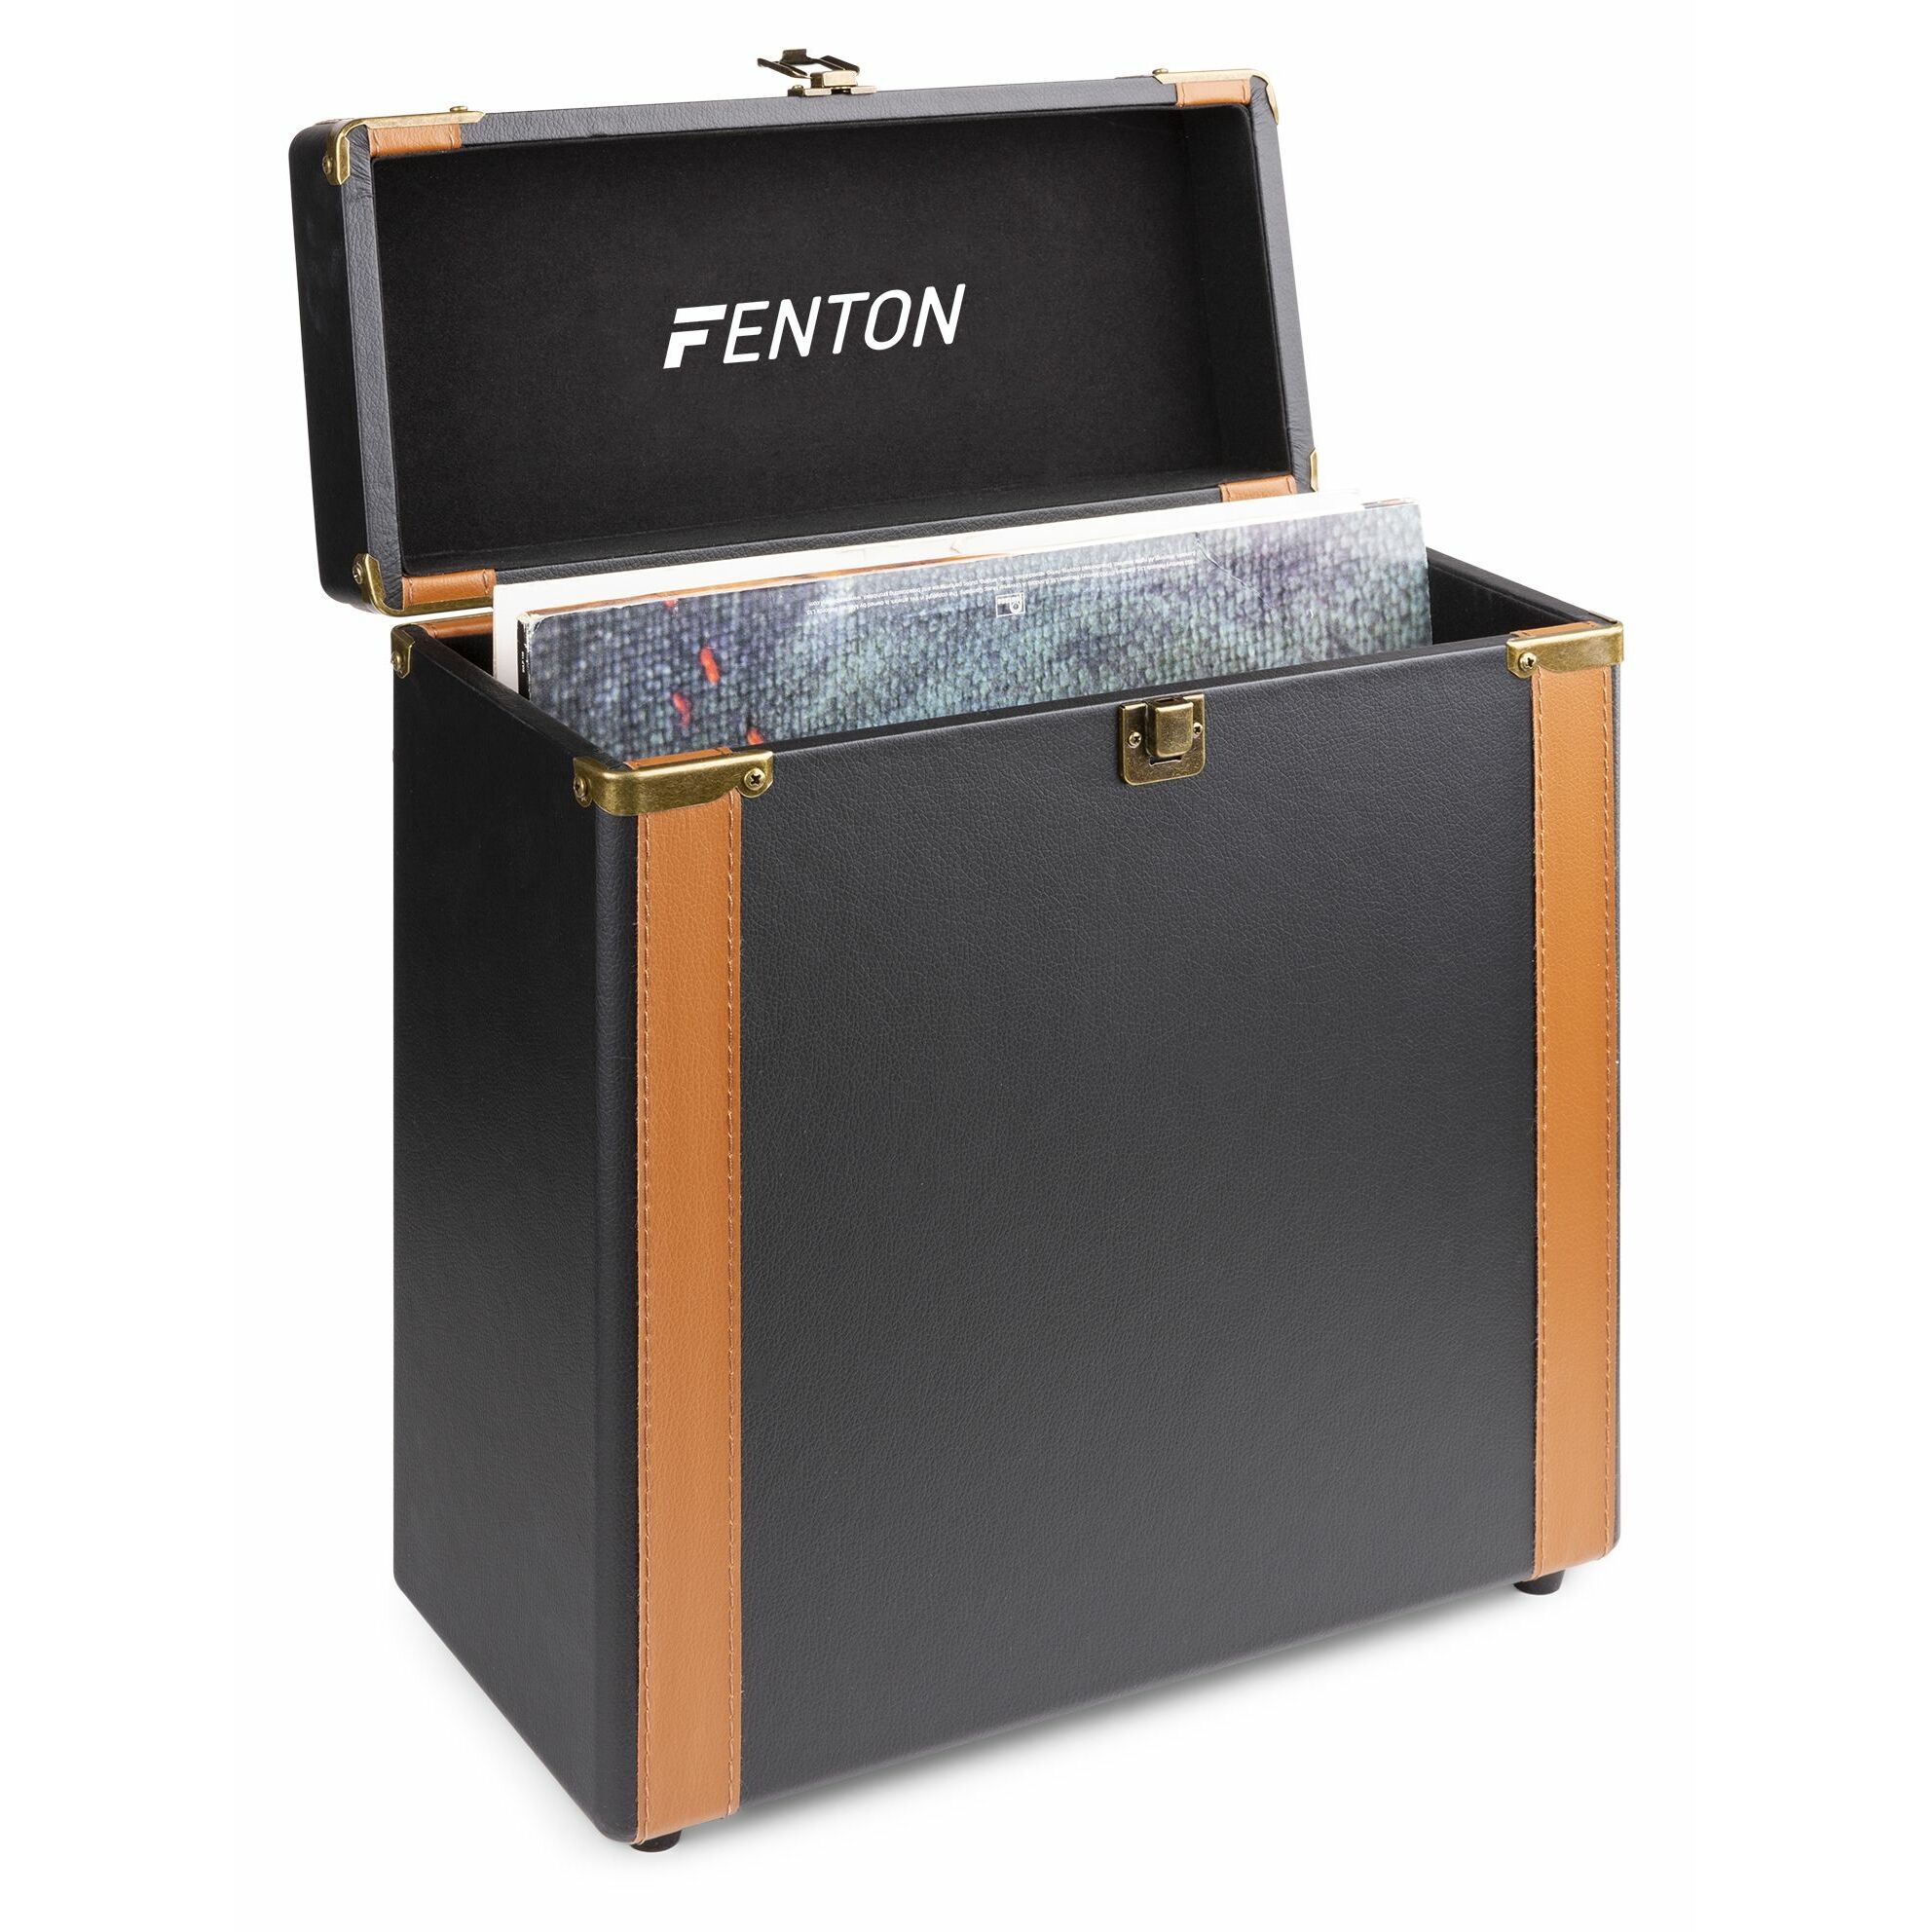 Retourdeal - Fenton RC35 luxe platenkoffer voor ruim 30 platen - Zwart